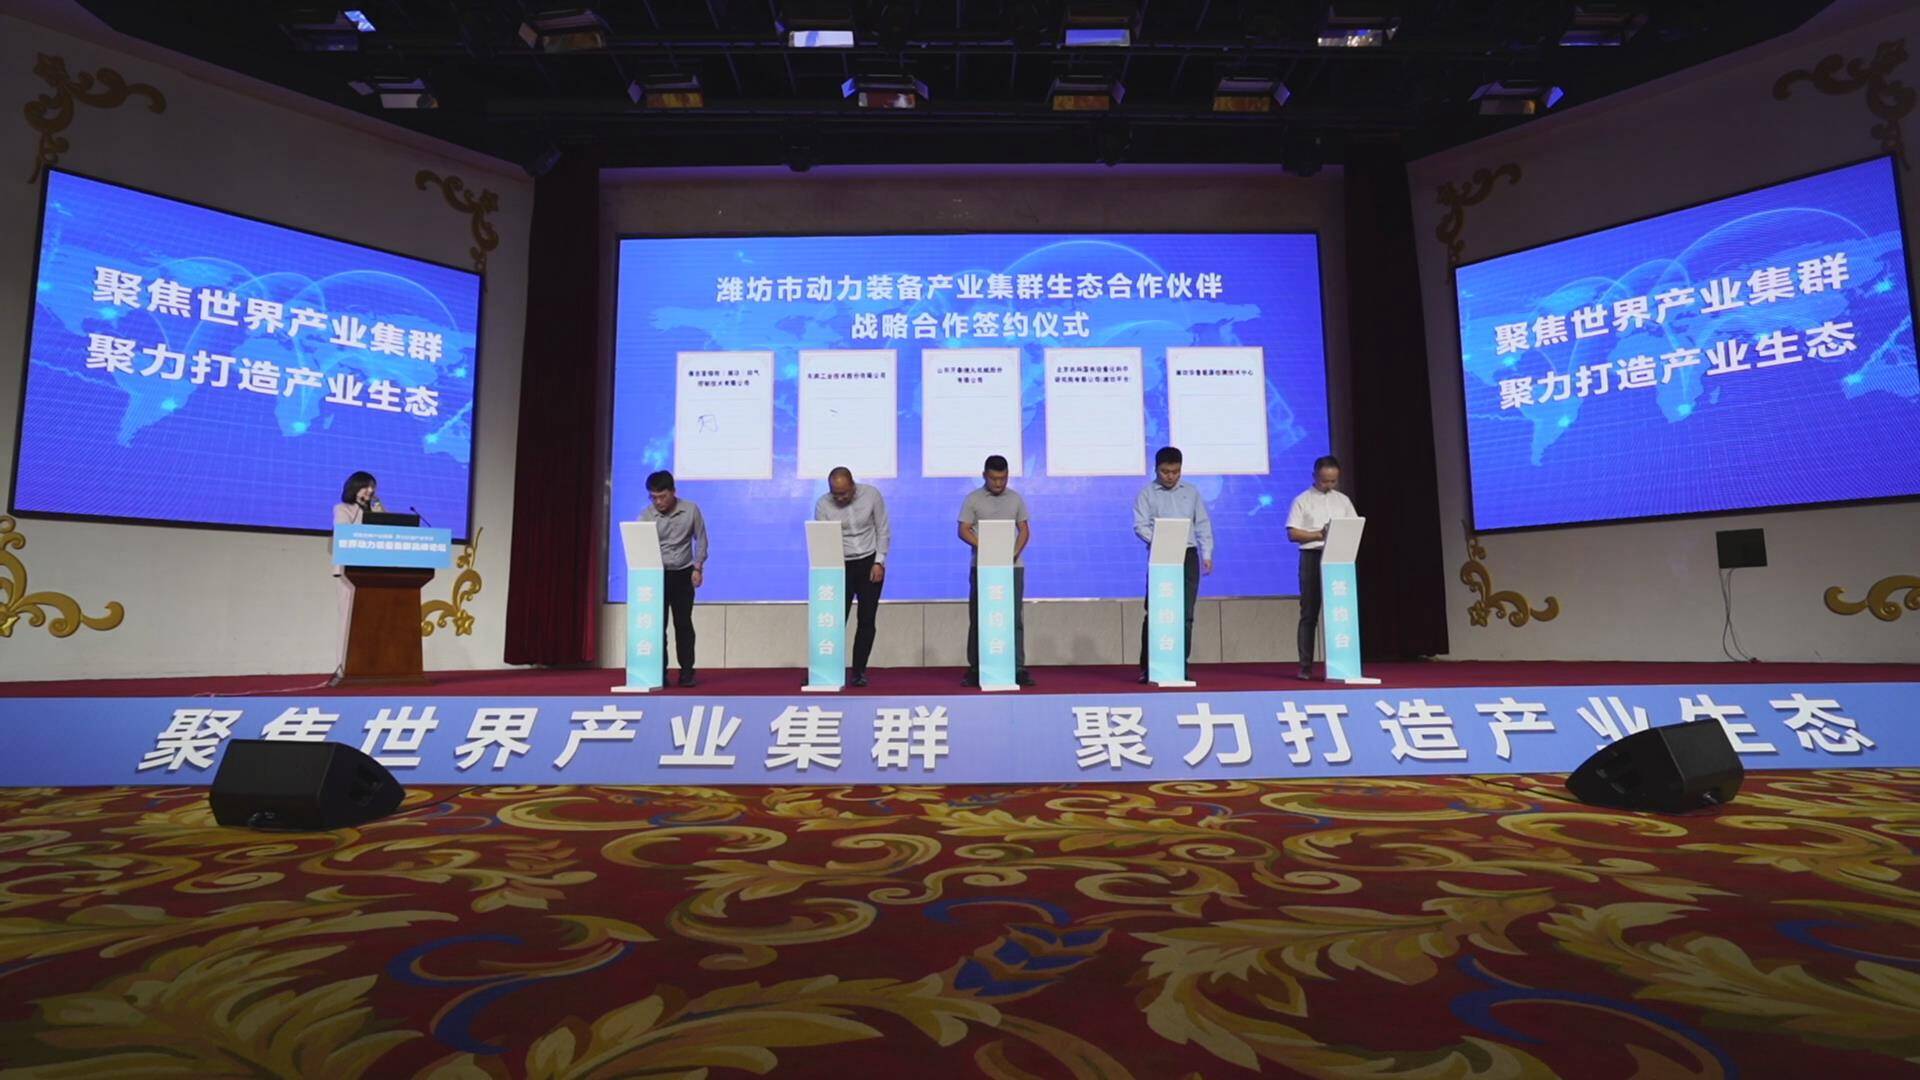 世界动力装备产业集群高峰论坛在潍坊成功举办